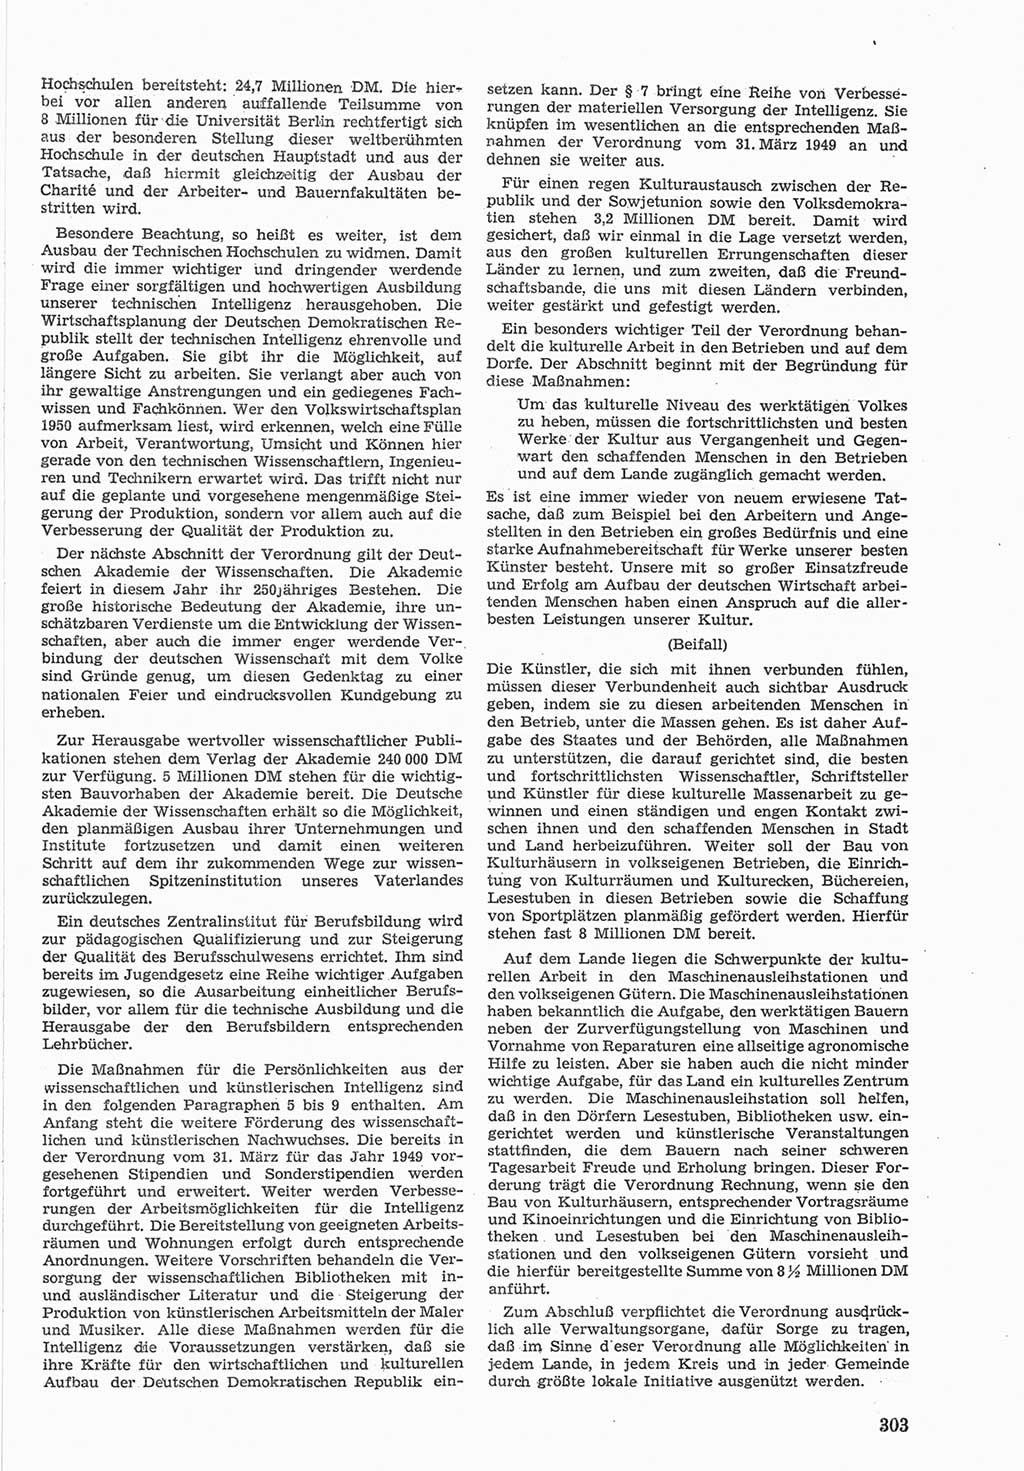 Provisorische Volkskammer (VK) der Deutschen Demokratischen Republik (DDR) 1949-1950, Dokument 317 (Prov. VK DDR 1949-1950, Dok. 317)